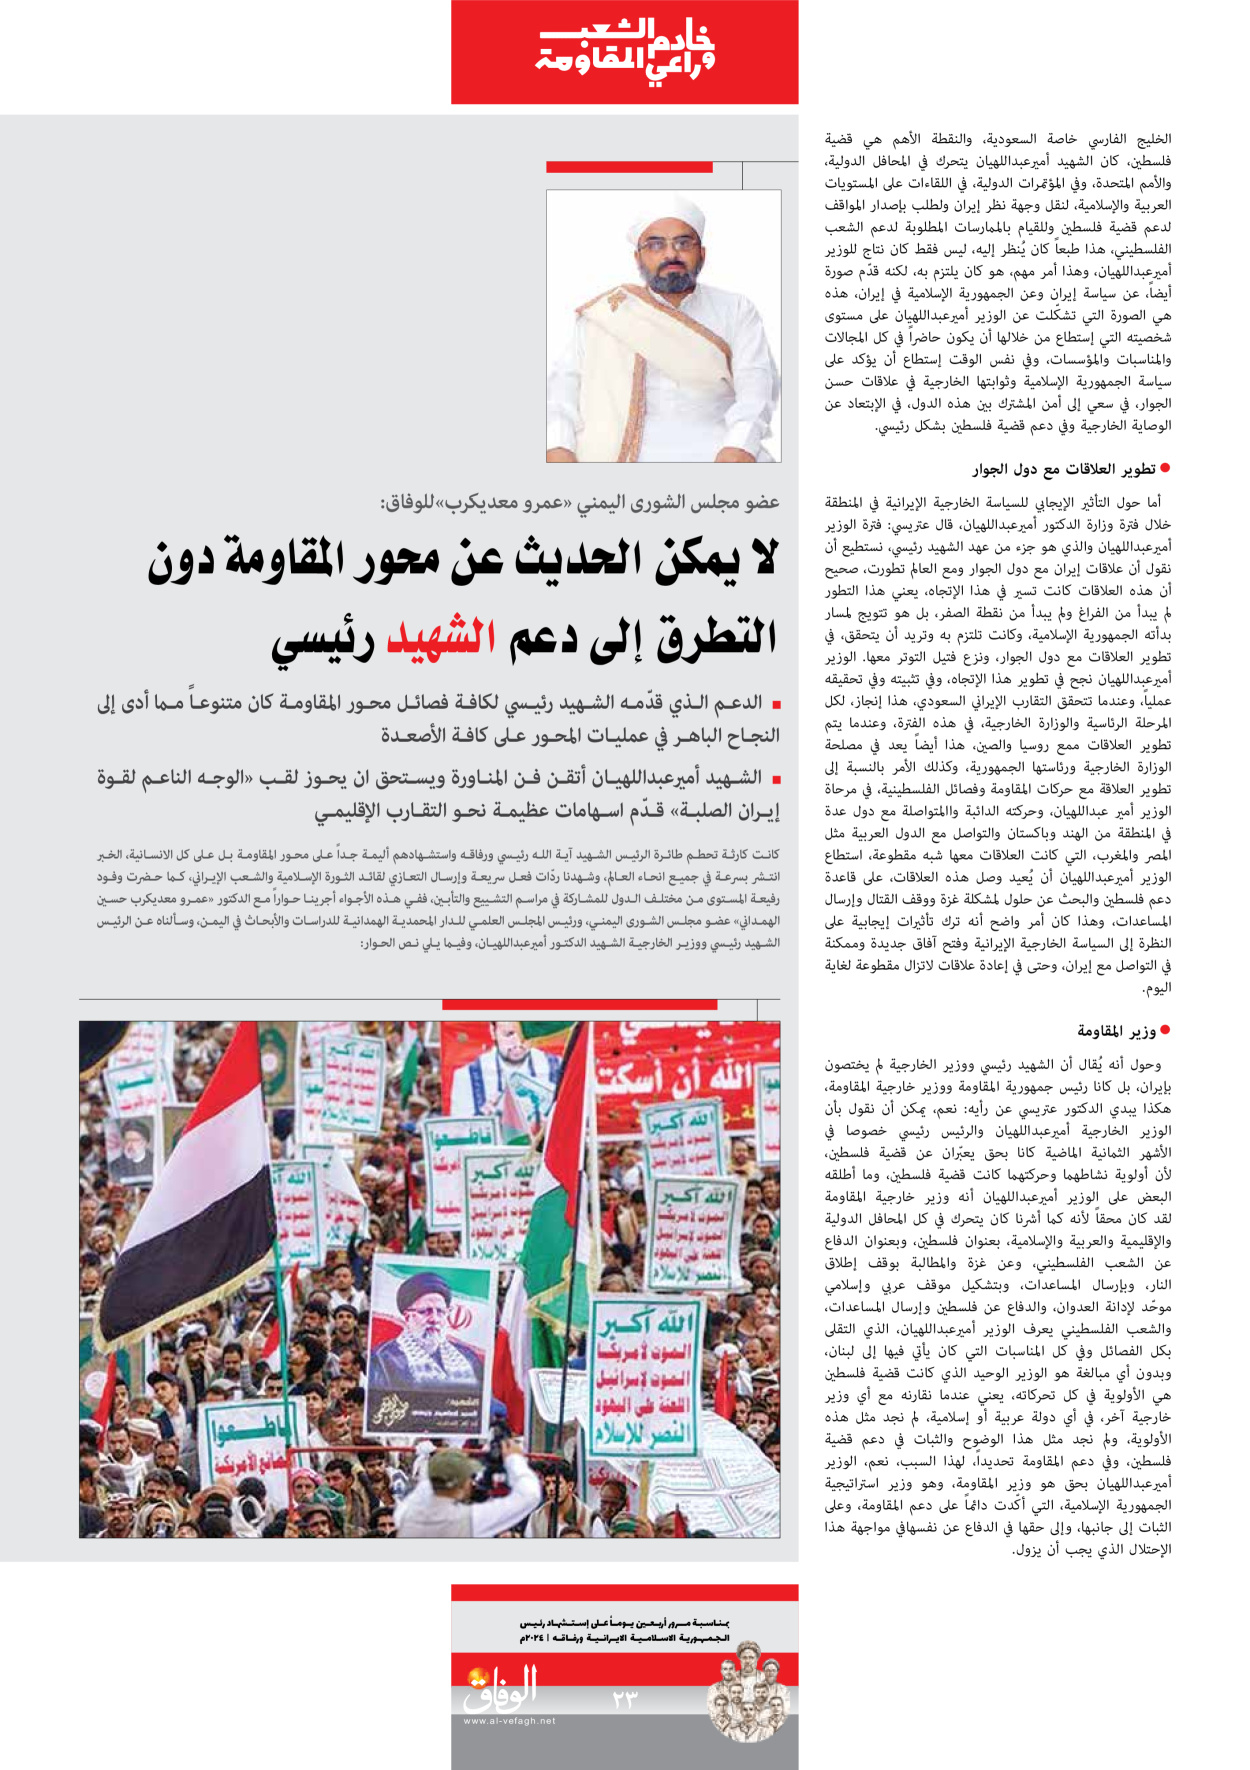 صحیفة ایران الدولیة الوفاق - ملحق ویژه نامه چهلم شهید رییسی - ٢٩ يونيو ٢٠٢٤ - الصفحة ۲۳